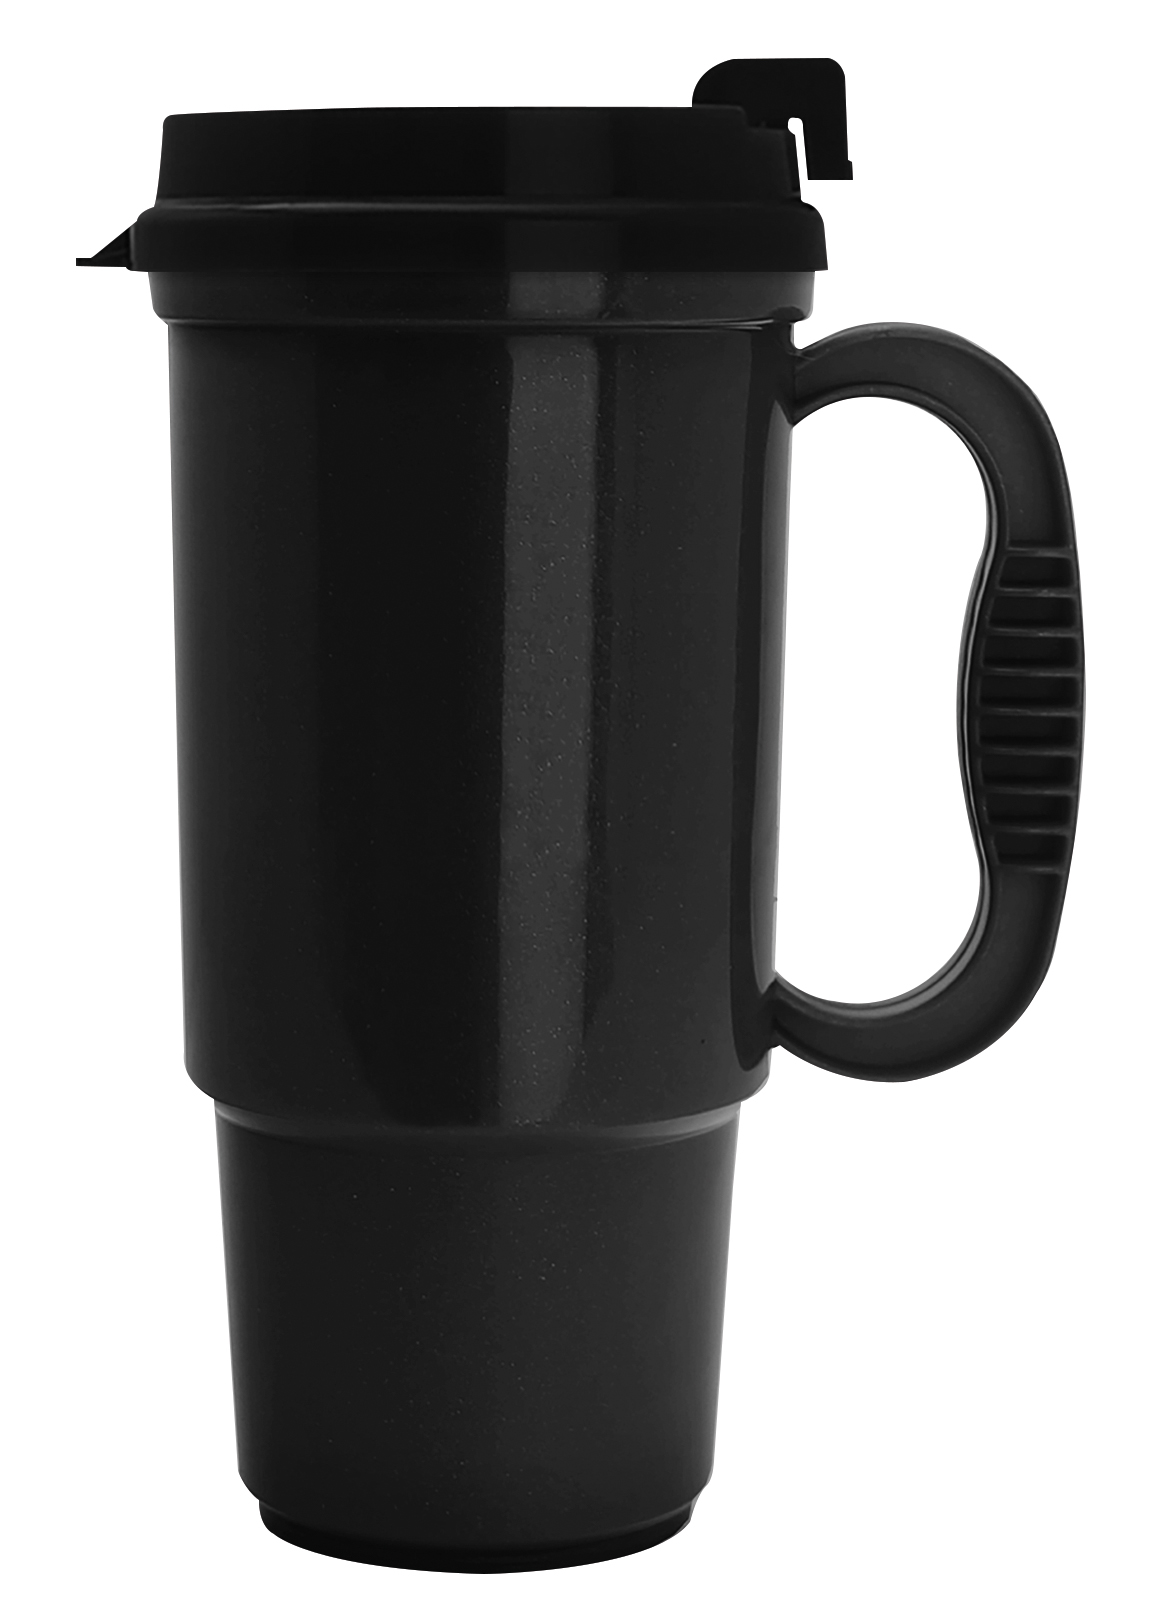 Good Value 45211C - Budget Traveler Mug with Slider Lid